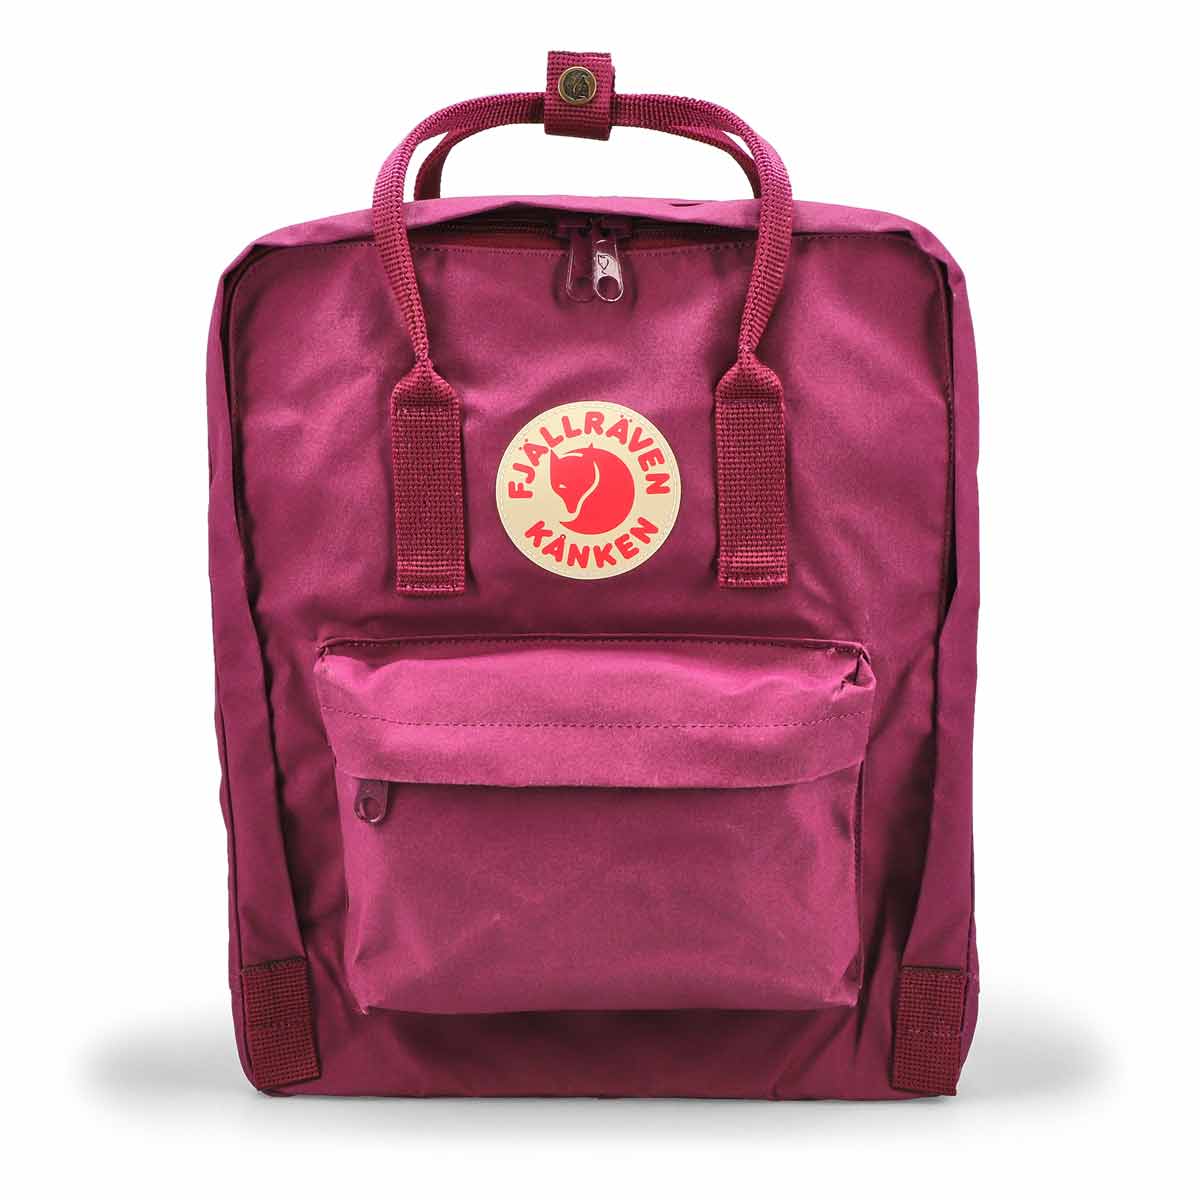 Fjallraven Kanken Backpack - Royal Purple